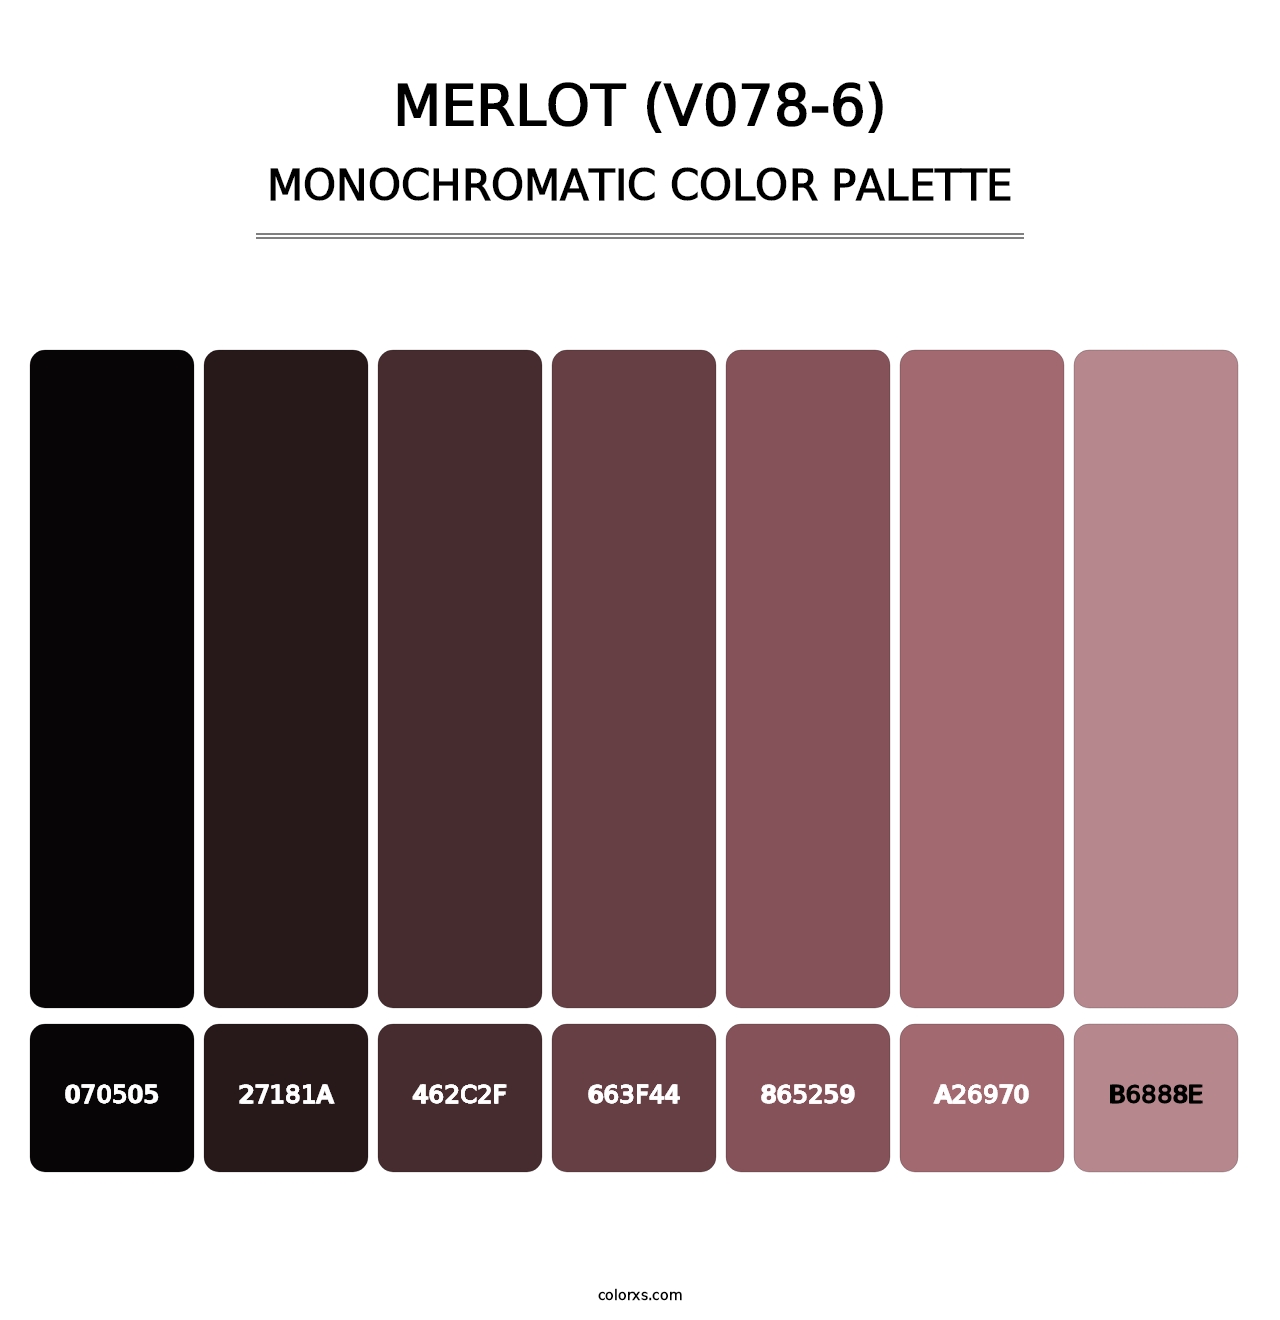 Merlot (V078-6) - Monochromatic Color Palette